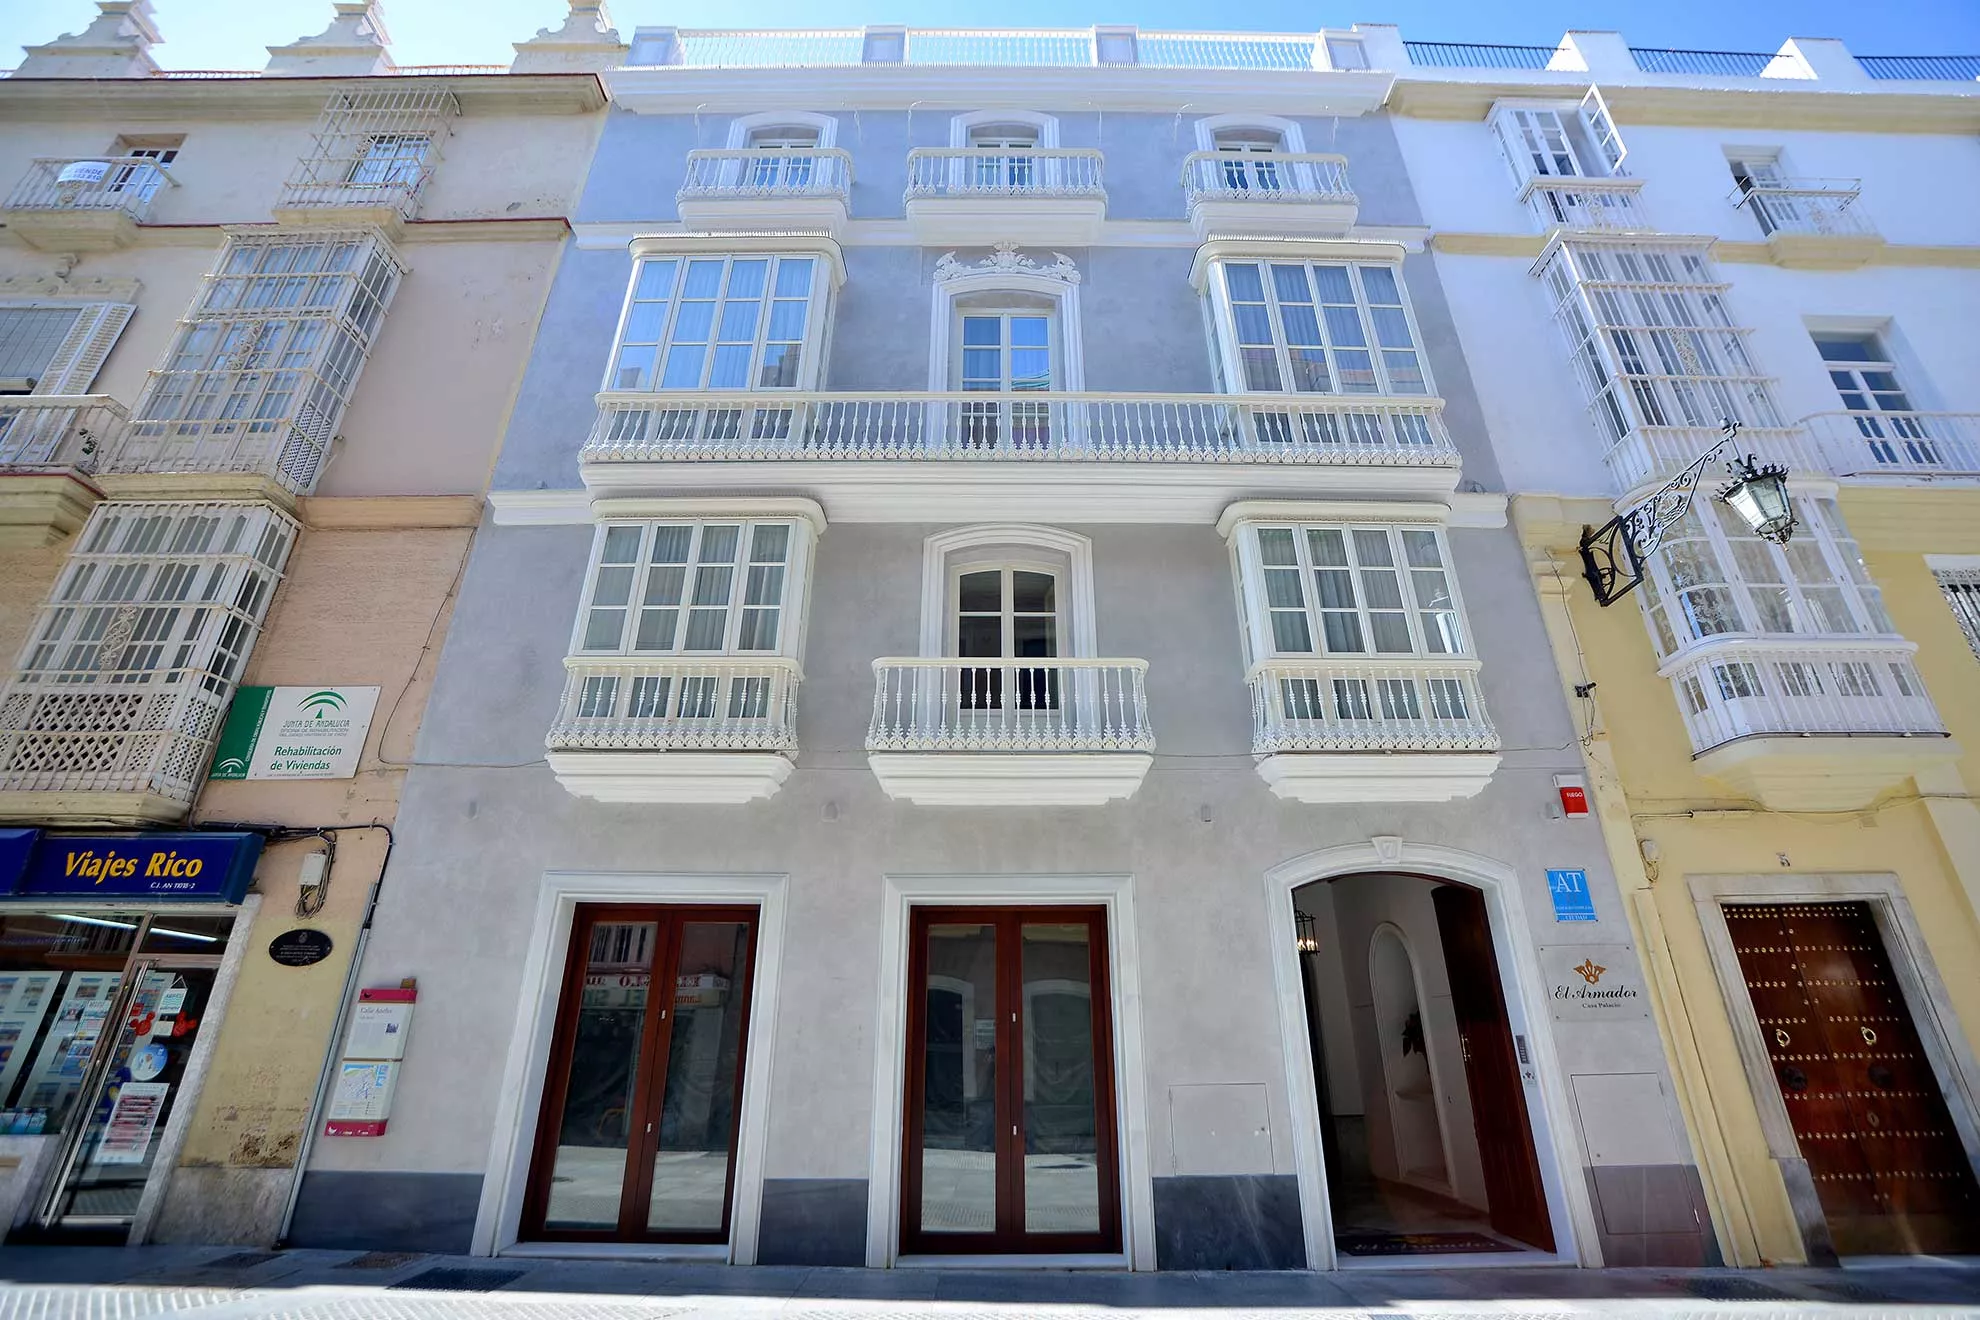 Cádiz lidera las pernoctaciones en este tipo de alojamiento